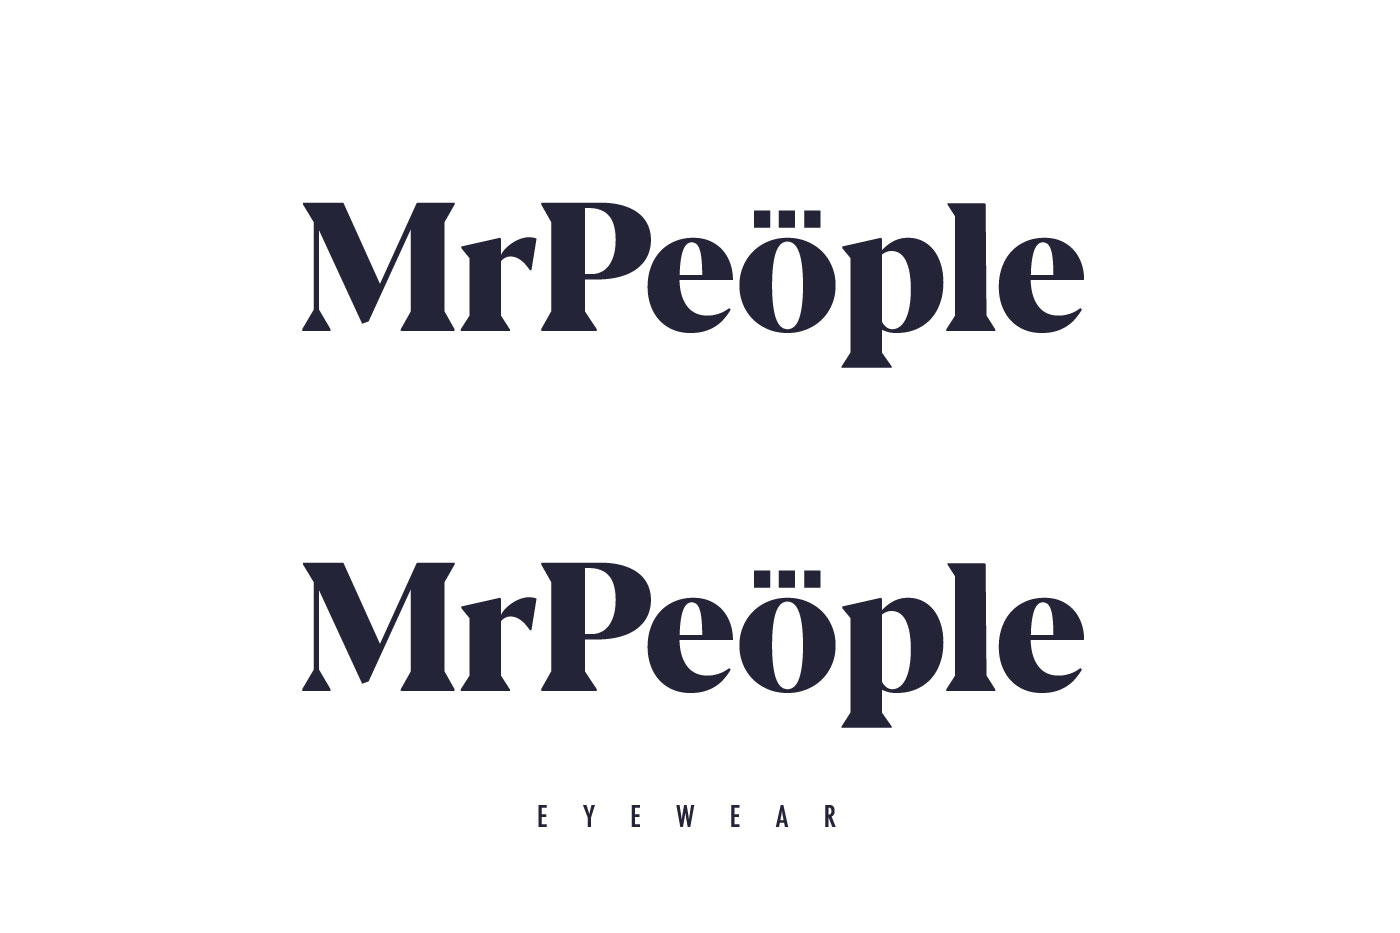 Mr People idea original planteamiento logo tipo